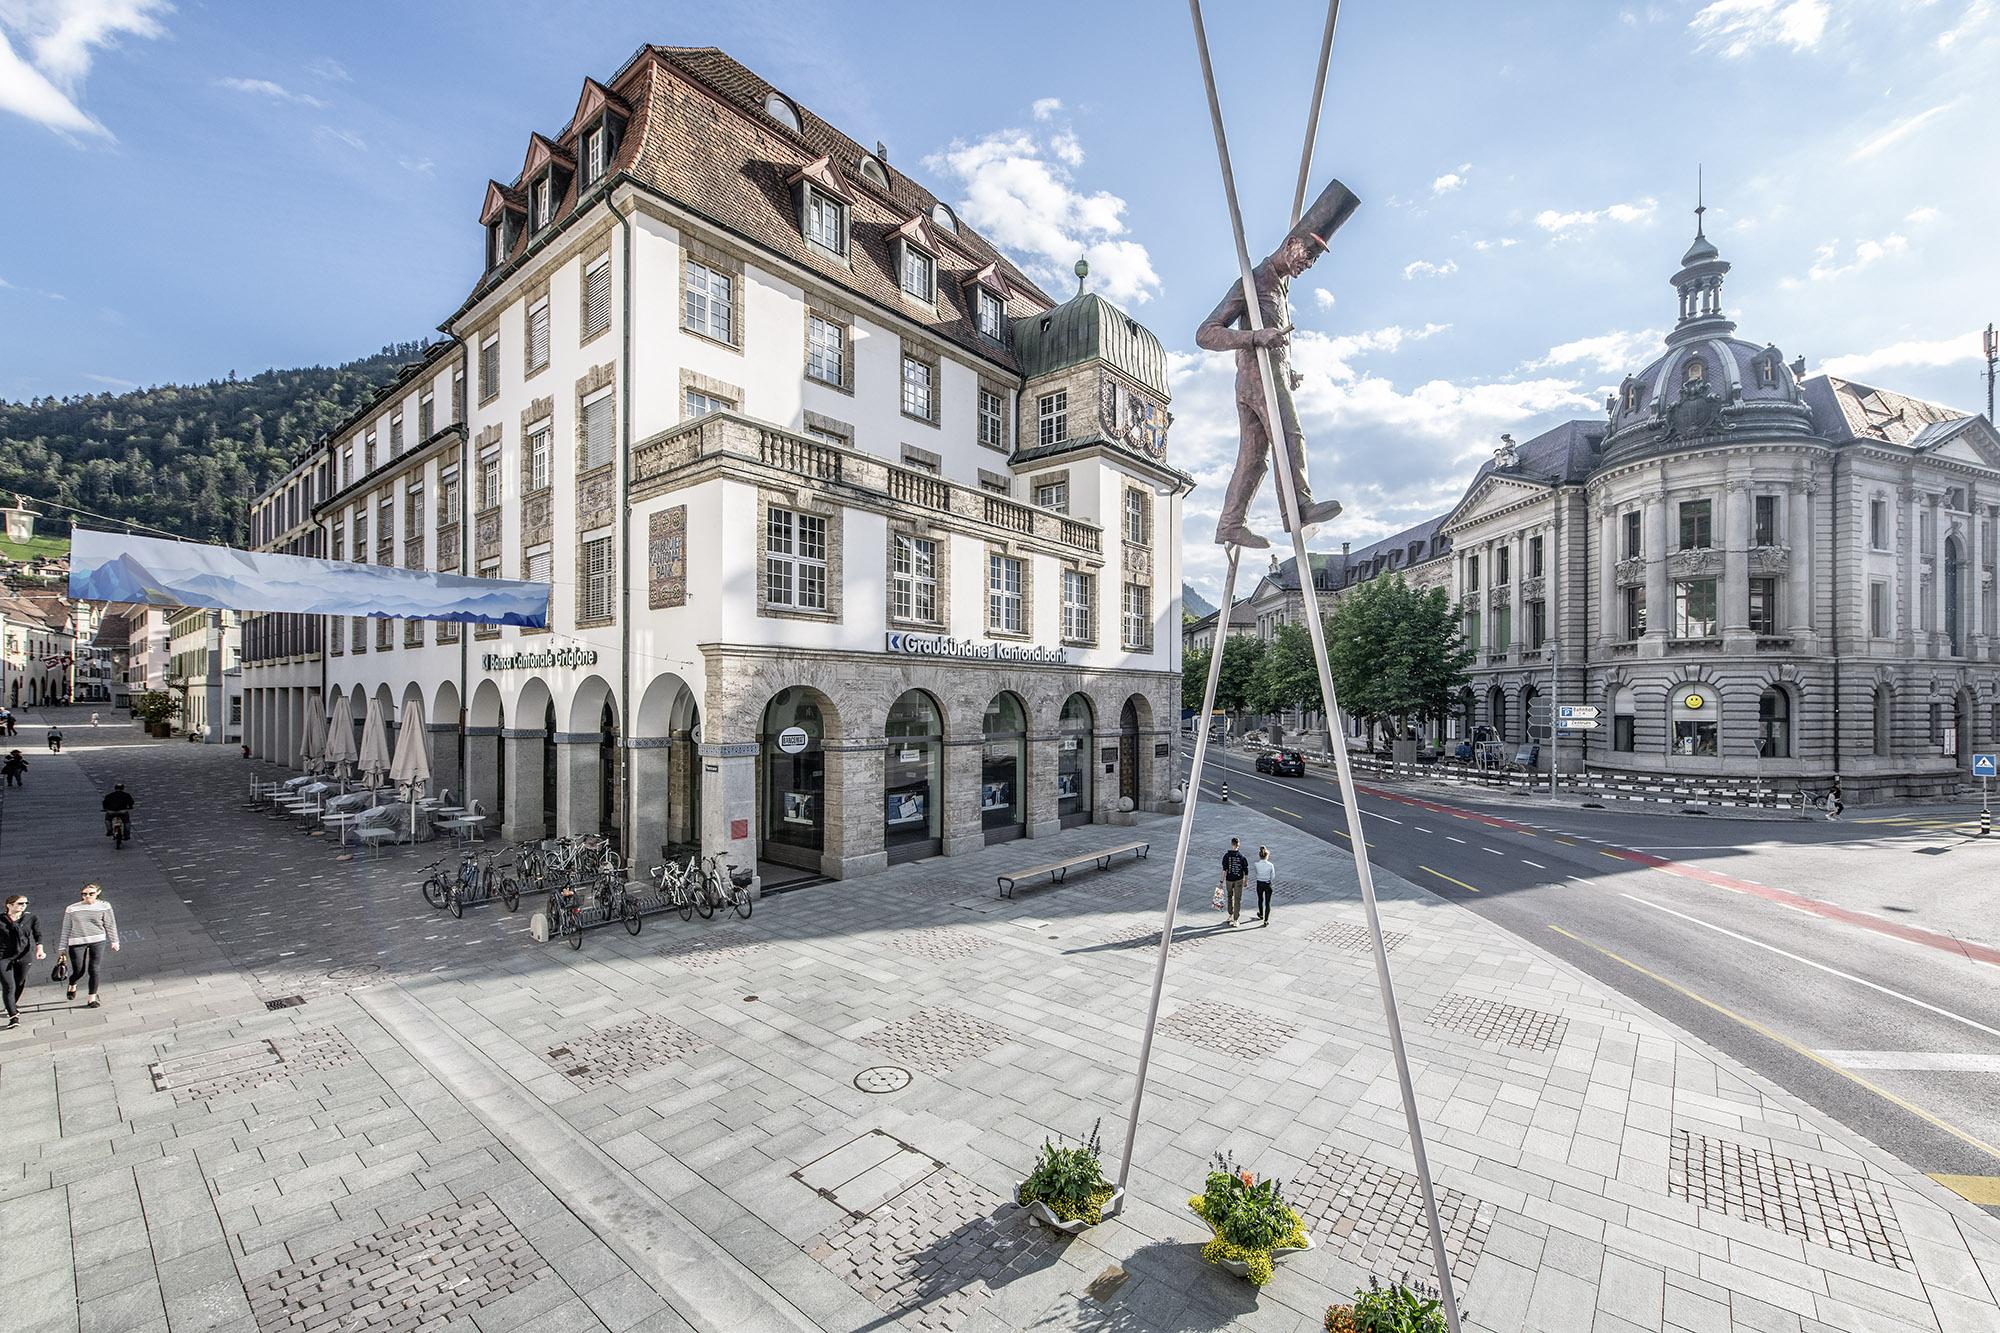 GKB Hauptsitz am Postplatz in Chur